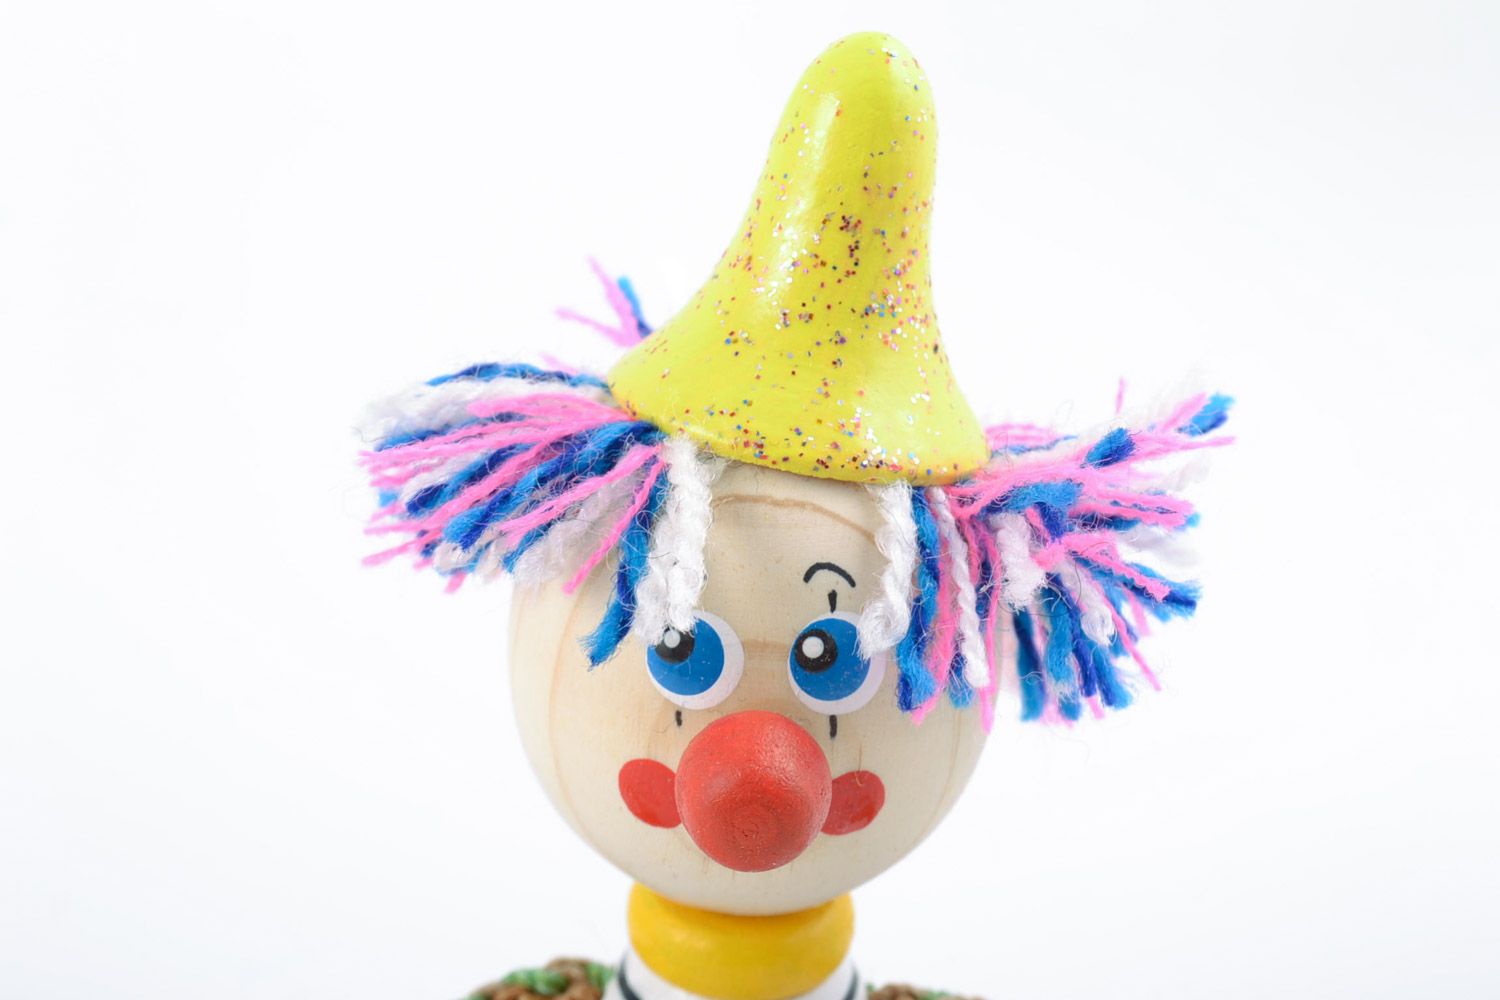 Оригинальная деревянная игрушка Клоун ручной работы расписанная эко-красками фото 3